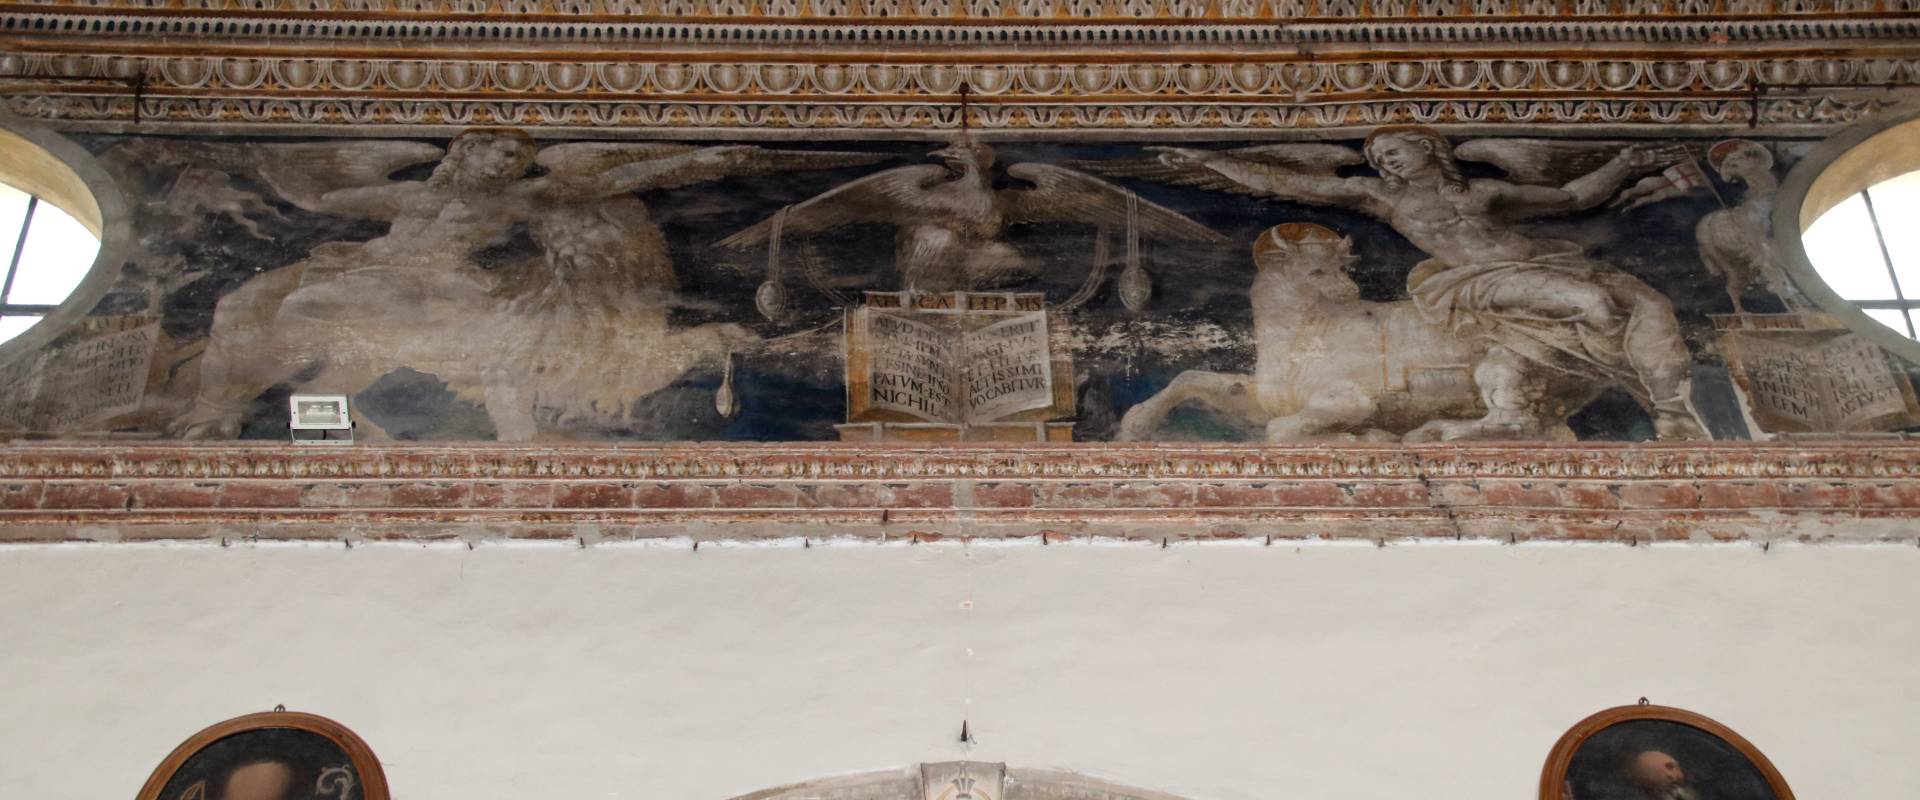 Chiesa di San Sisto (Piacenza), interno 69 foto di Mongolo1984